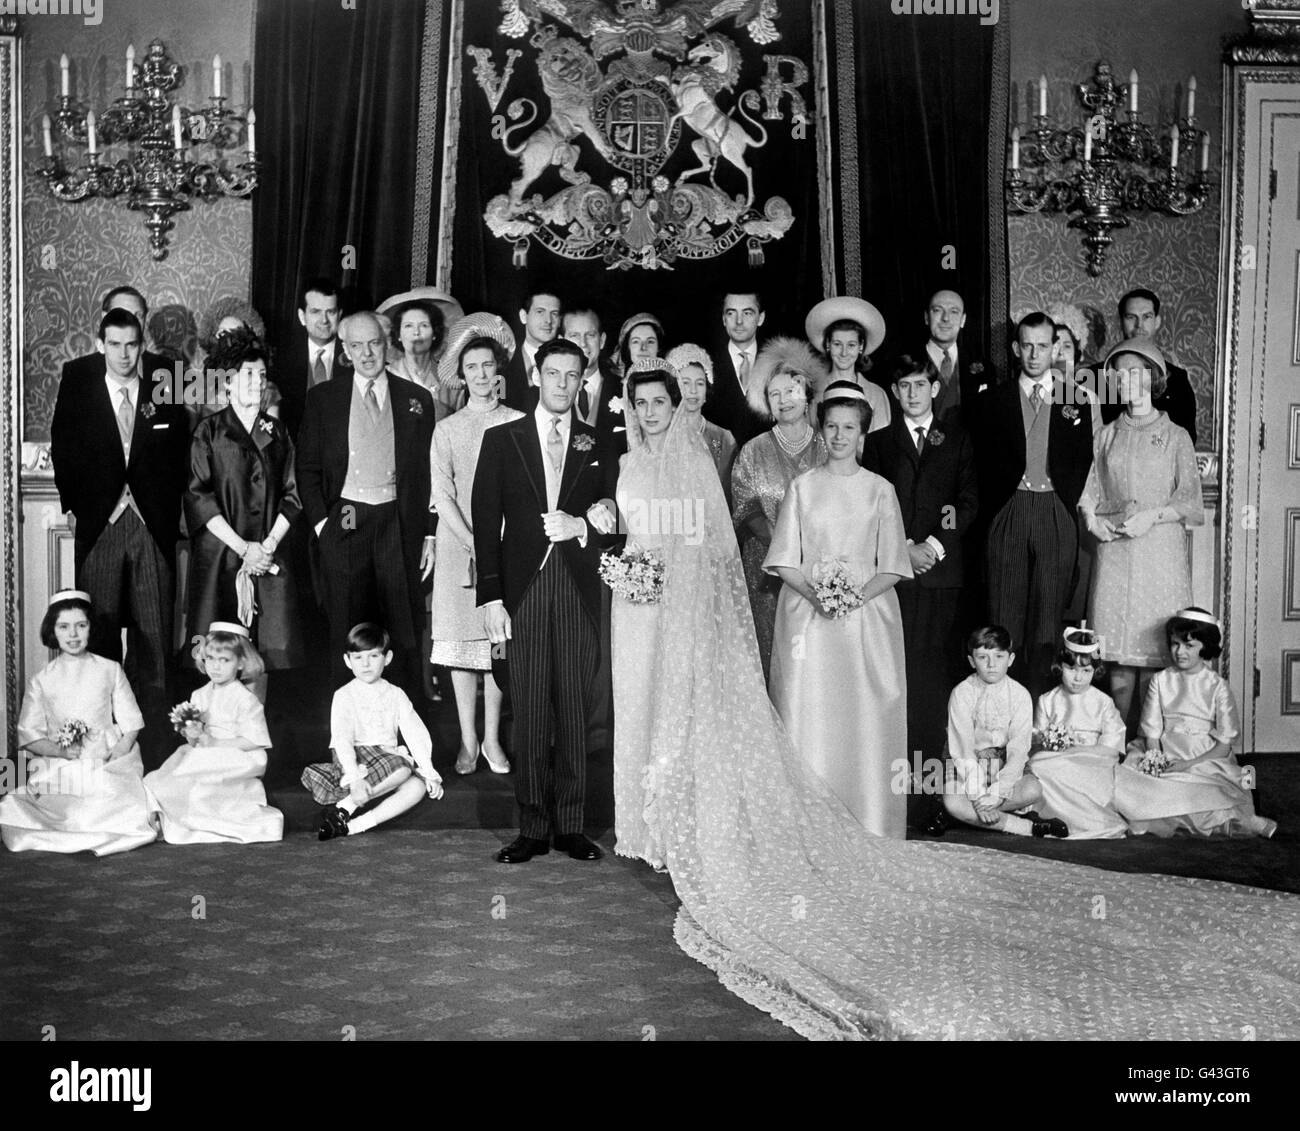 Le groupe de mariage au Palais St James's, à Londres, lors de la réception suivant le mariage de la princesse Alexandra et d'Angus Ogilvy. De gauche à droite, rangée arrière; Peregrine Fairfax, Lady Balfour, Iain Tennant, Lady Lloyd, James Ogilvy, Lady Ogilvy, Lord Ogilvy Mme J Ogilvy, Lord Lloyd, Lady Margaret Tennant et Peter Balfour. Centre, de gauche à droite; Prince Michael de Kent, la comtesse d'Airlie et le comte d'Airlie (parents de l'époux), la princesse Marina, la duchesse de Kent (mère de la mariée), le duc d'Édimbourg, la reine, la reine mère, le prince de Galles, le duc et la duchesse de Kent. Banque D'Images